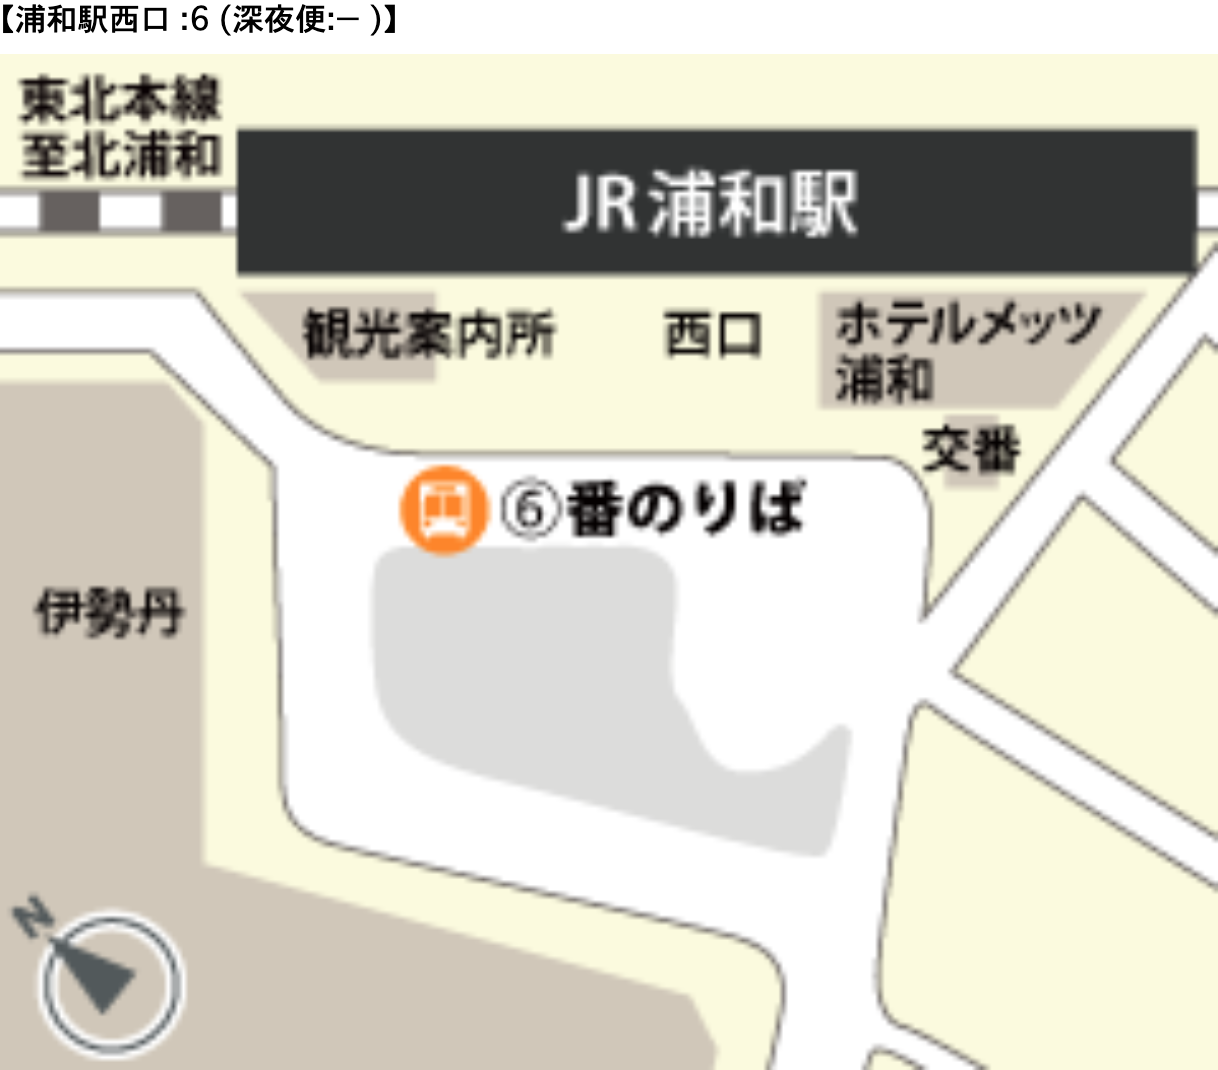 羽田空港へ快適に行く埼玉県民には電車でなくバスがおすすめな理由 フォトロマ